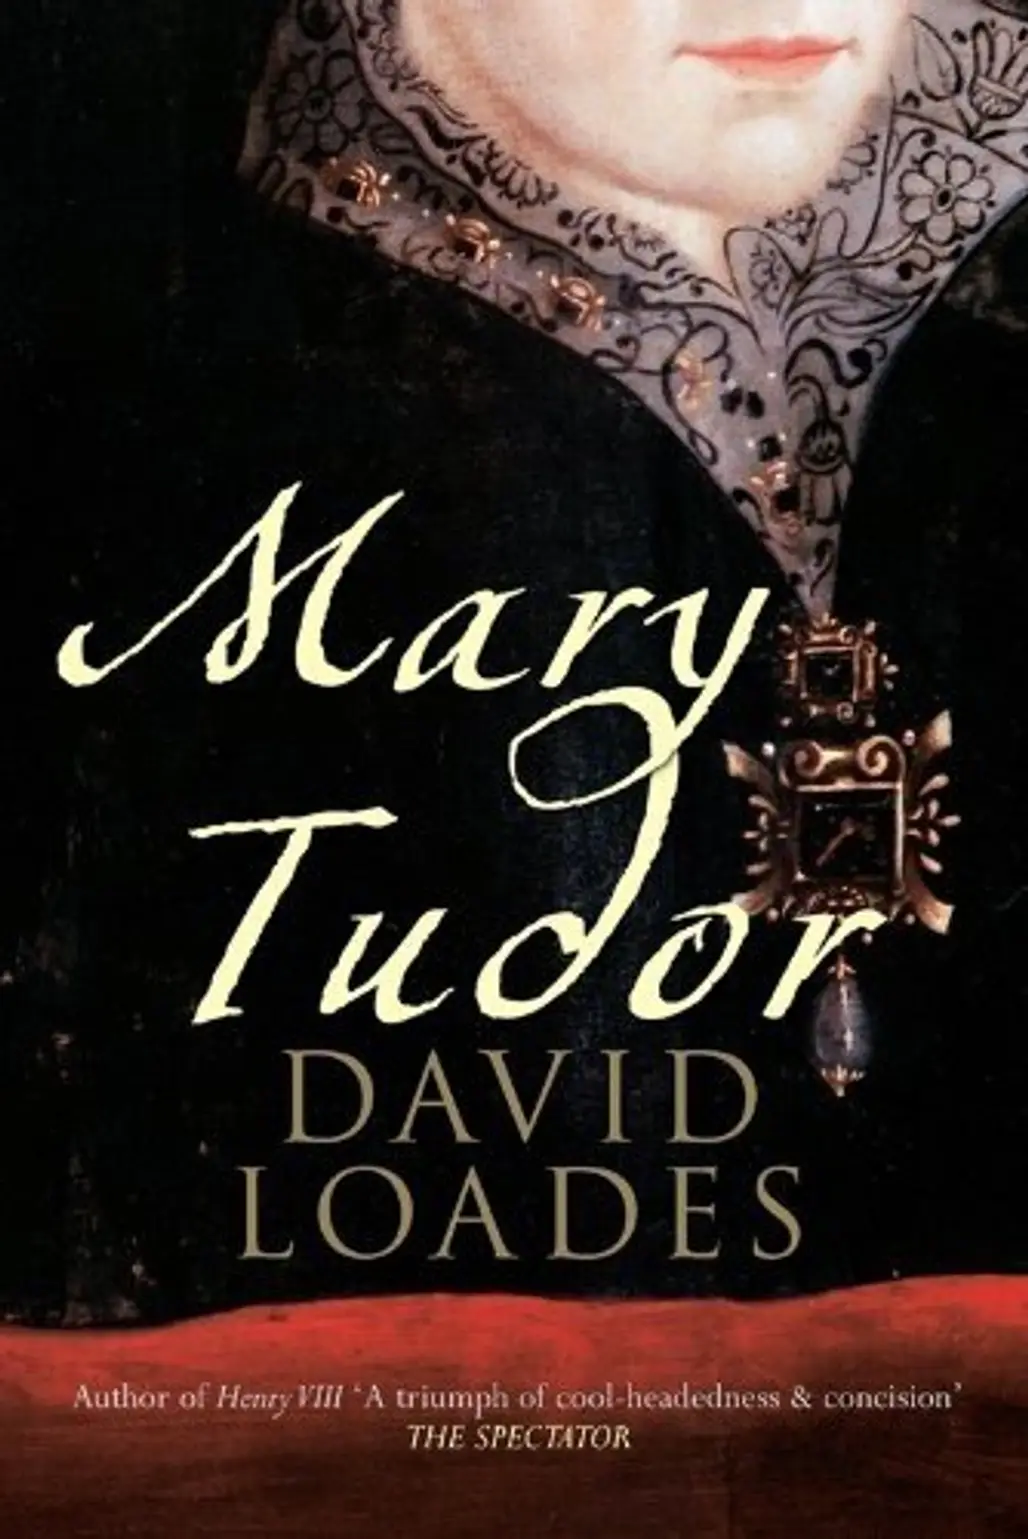 Mary Tudor (David Loades)